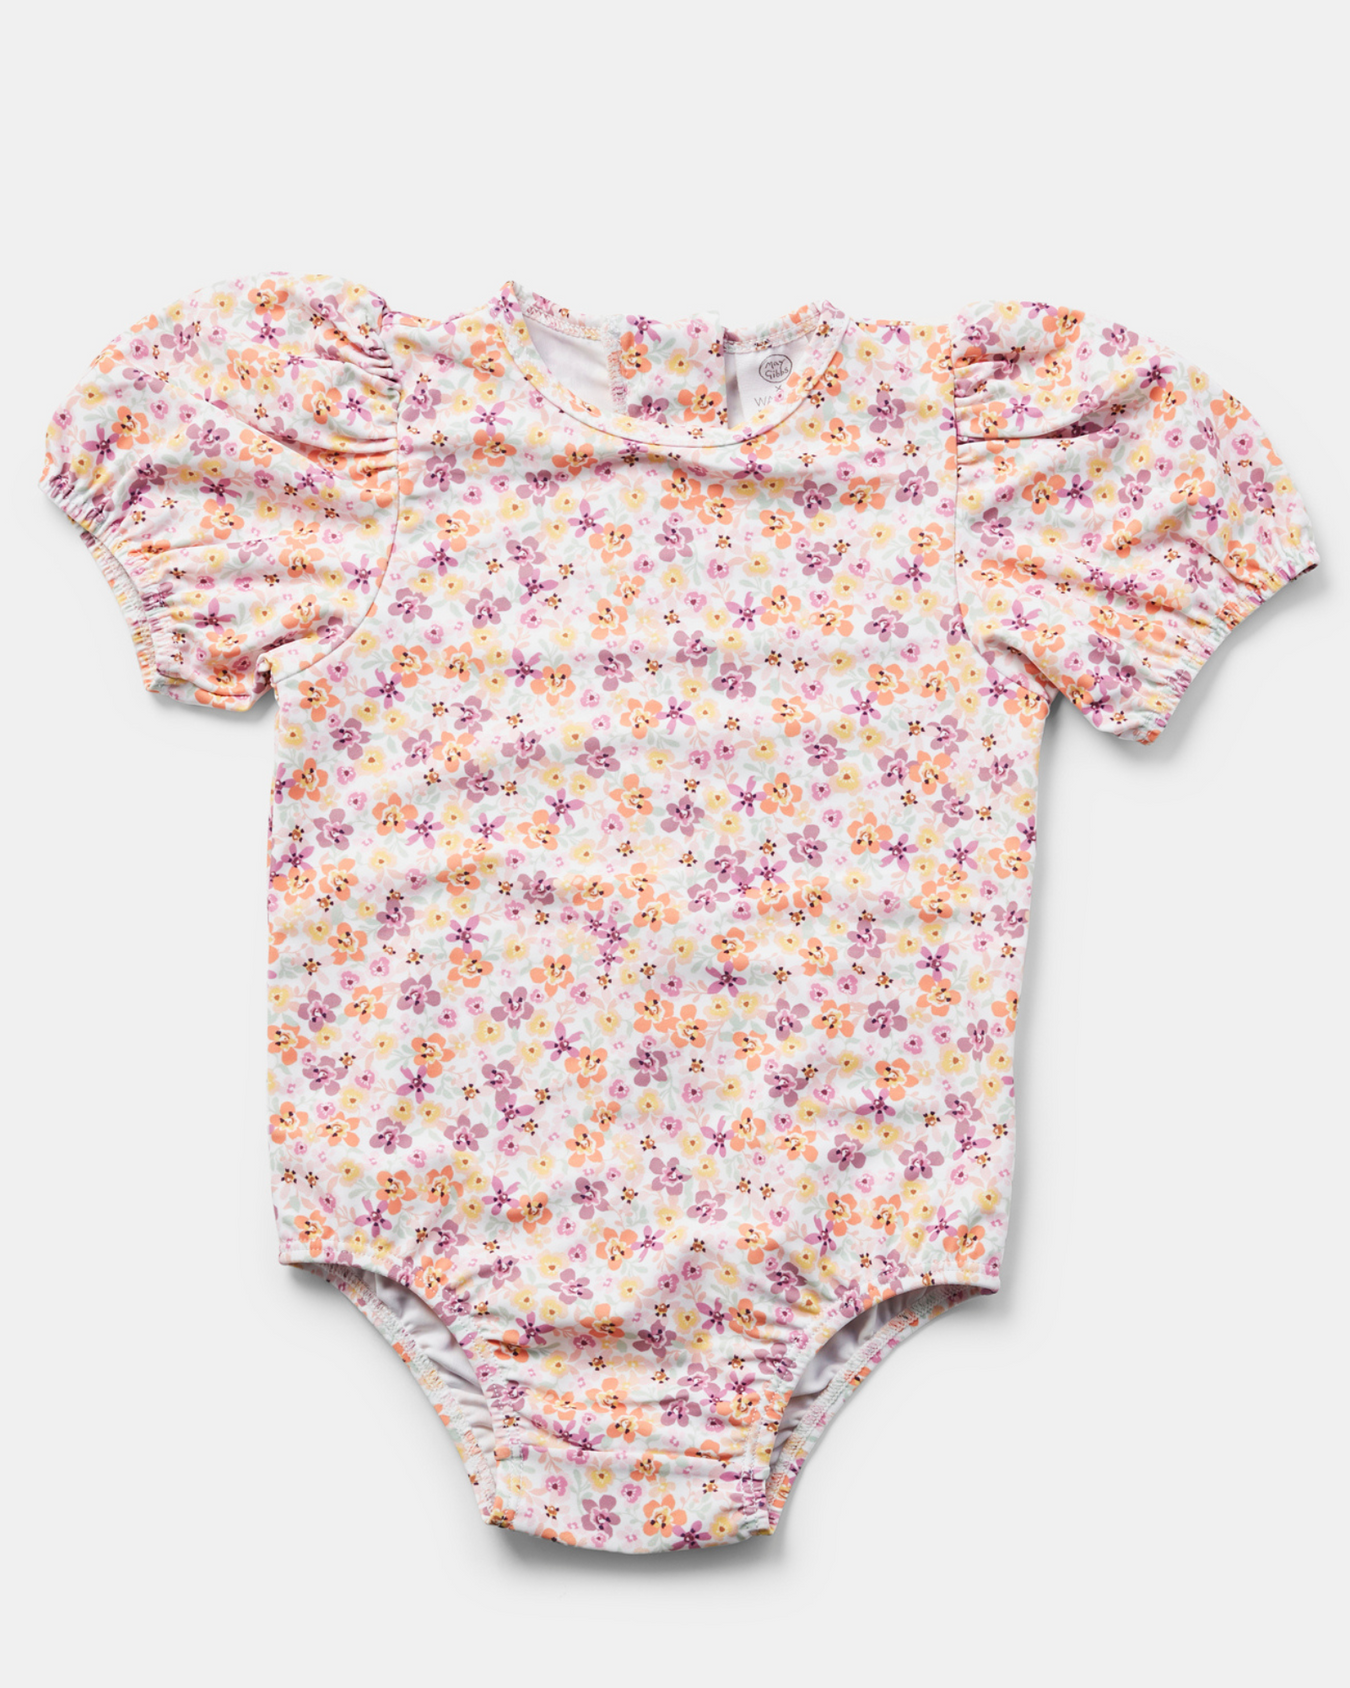 Baby Girl Swimwear